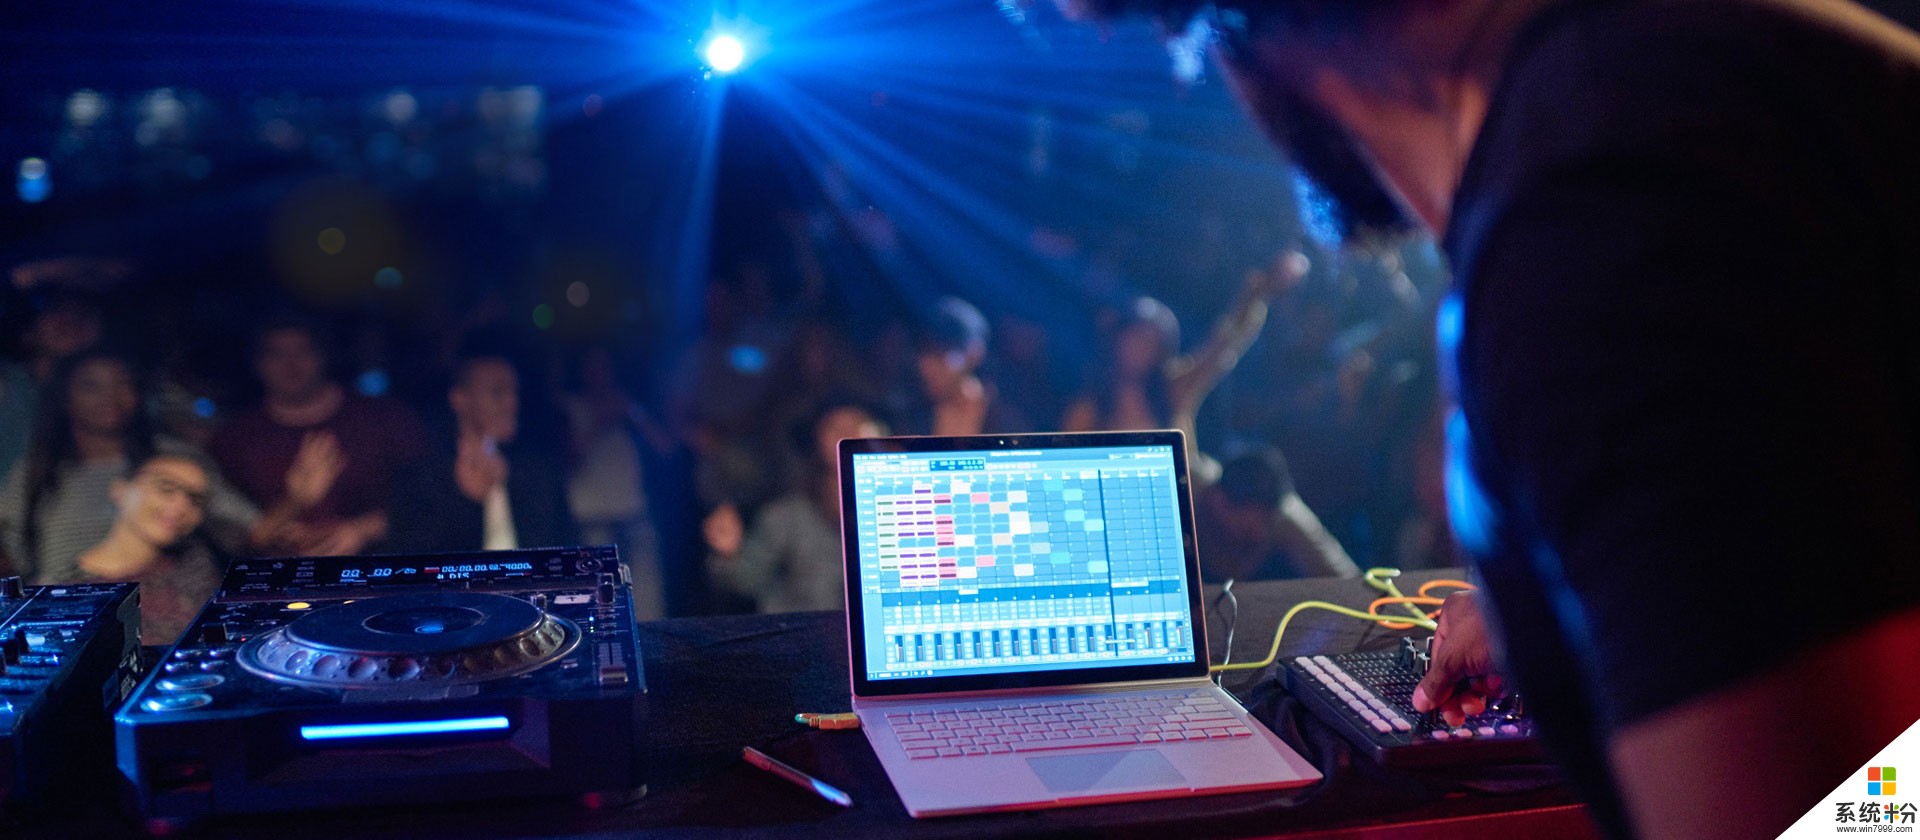 微软用 Surface Book 和 Kinect 为 DJ 的音乐演出带来了全新的视觉体验(7)